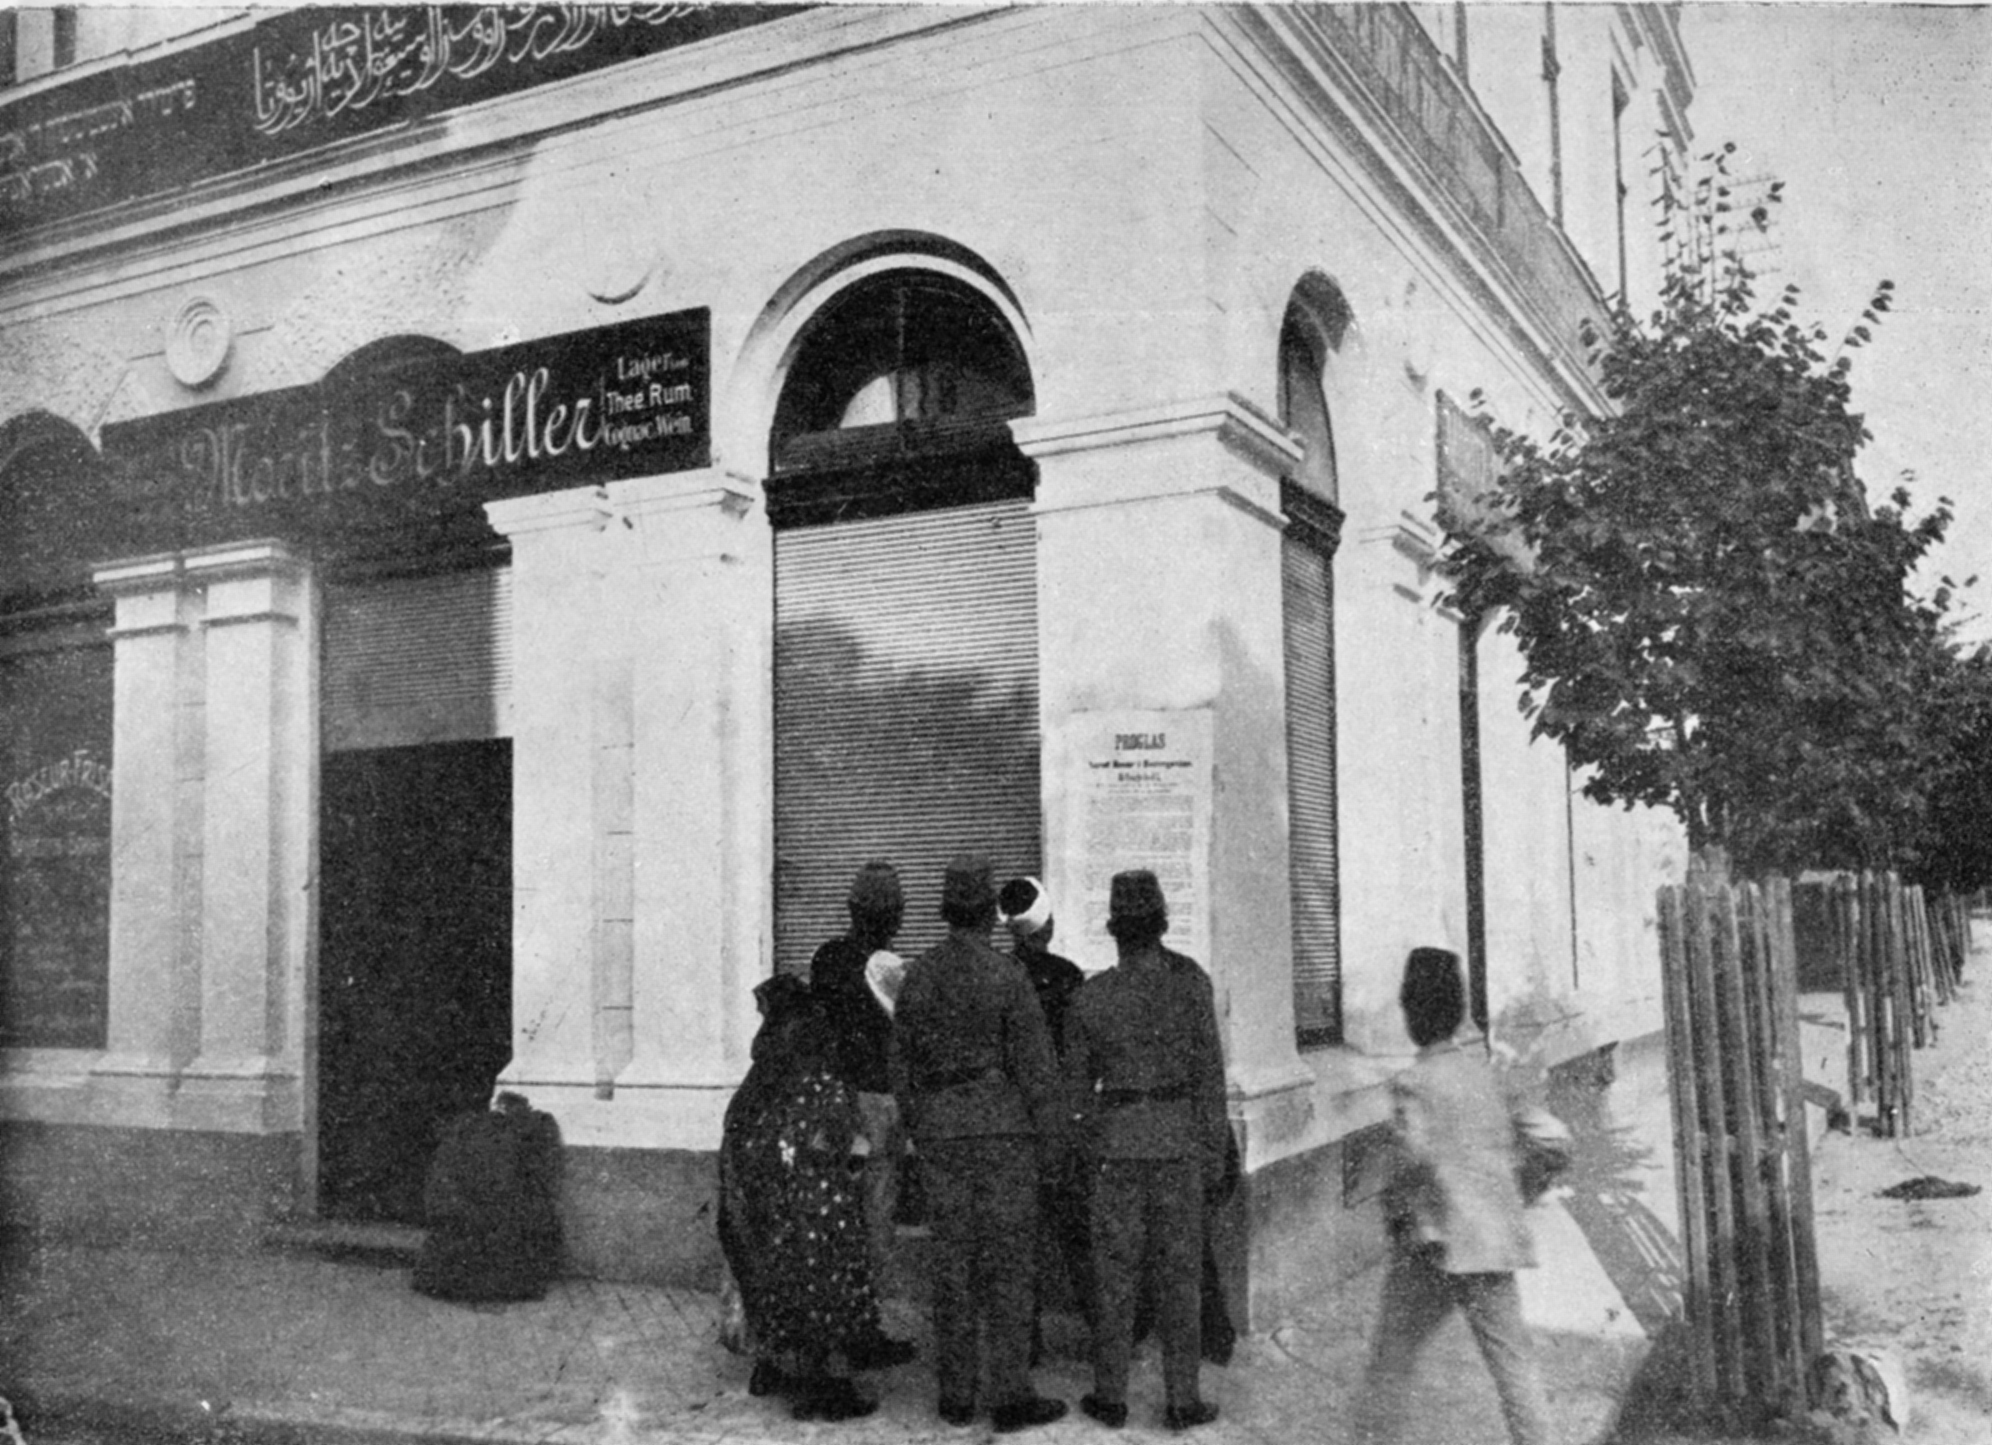 Assassination of Franz Ferdinand - Moritz Schiller's café.